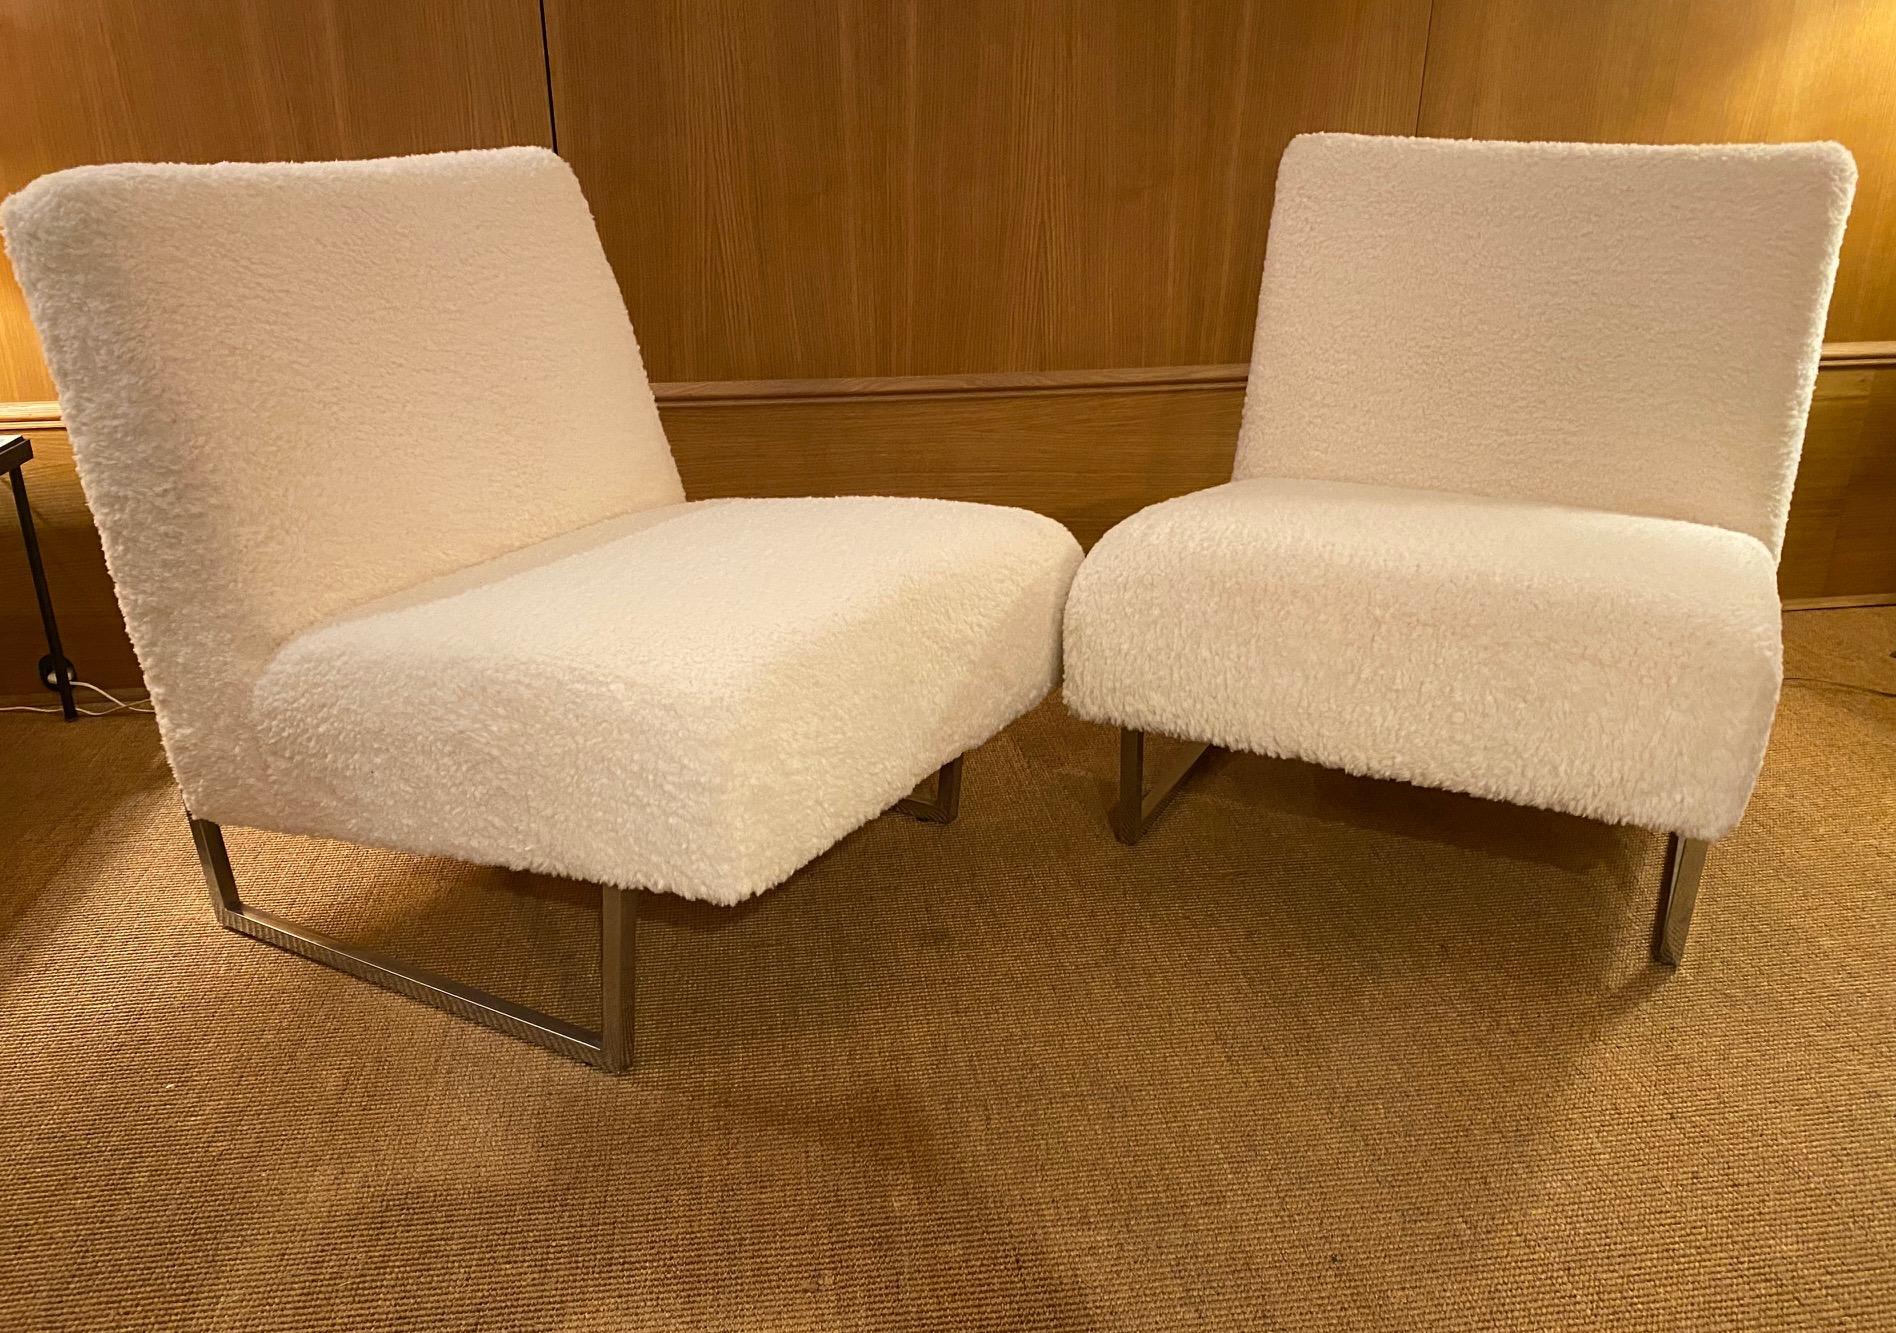 Pair of slipper chairs 